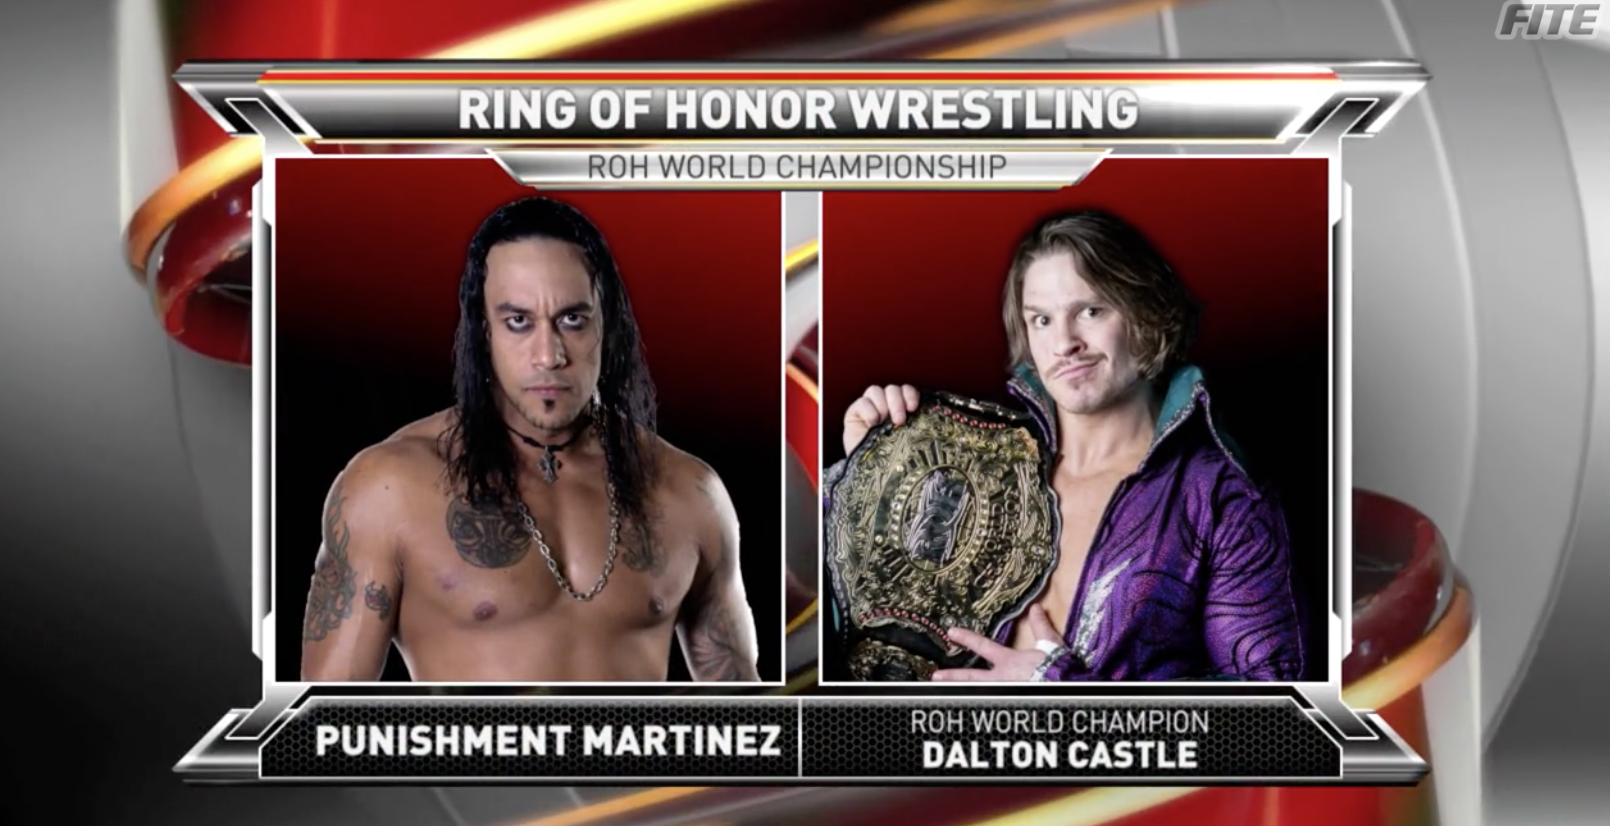 ROH 2/10/18 TV Review: Dalton Castle vs. Punishment Martinez